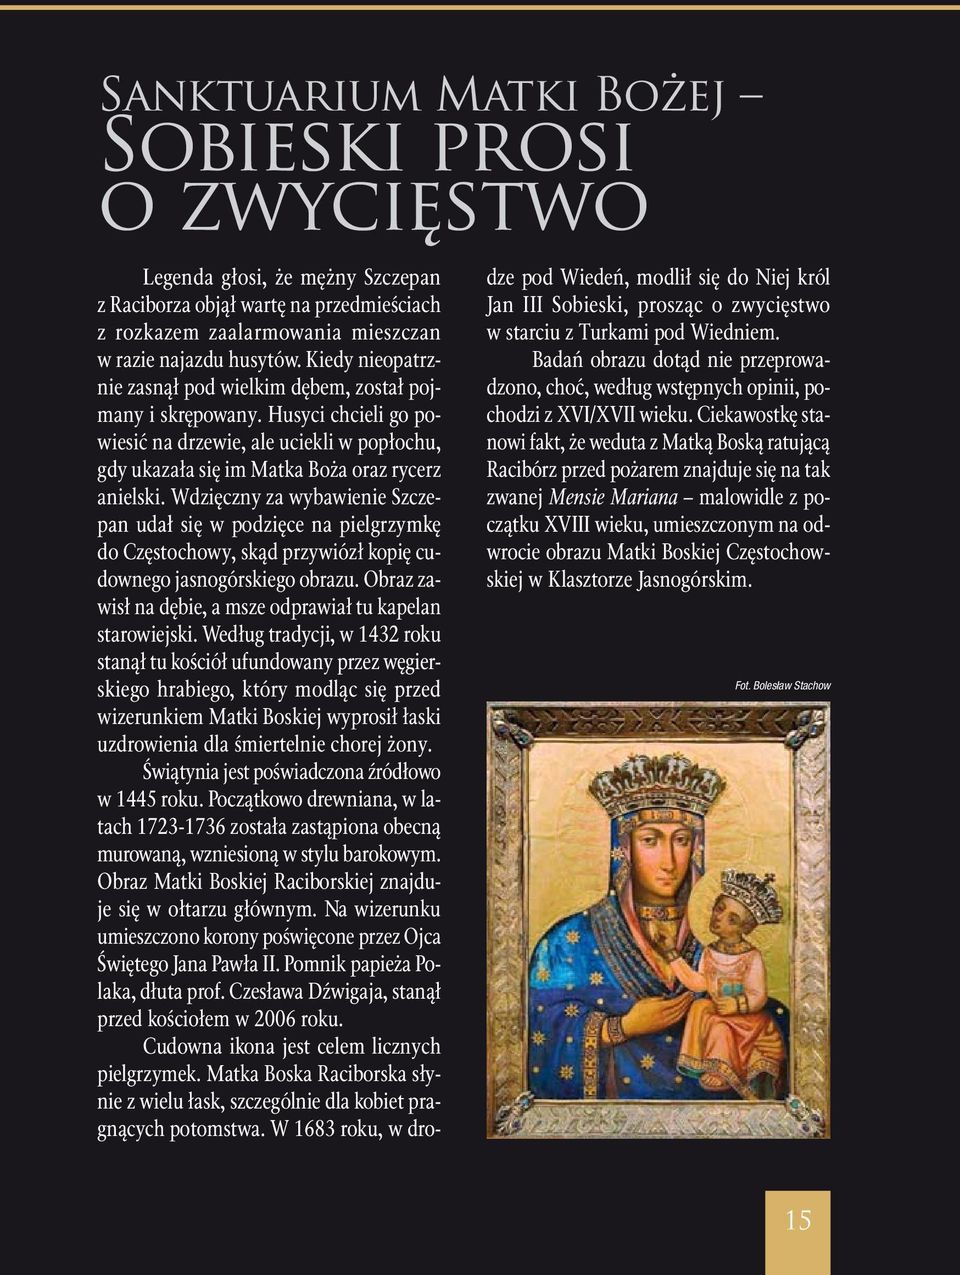 Wdzięczny za wybawienie Szczepan udał się w podzięce na pielgrzymkę do Częstochowy, skąd przywiózł kopię cudownego jasnogórskiego obrazu.